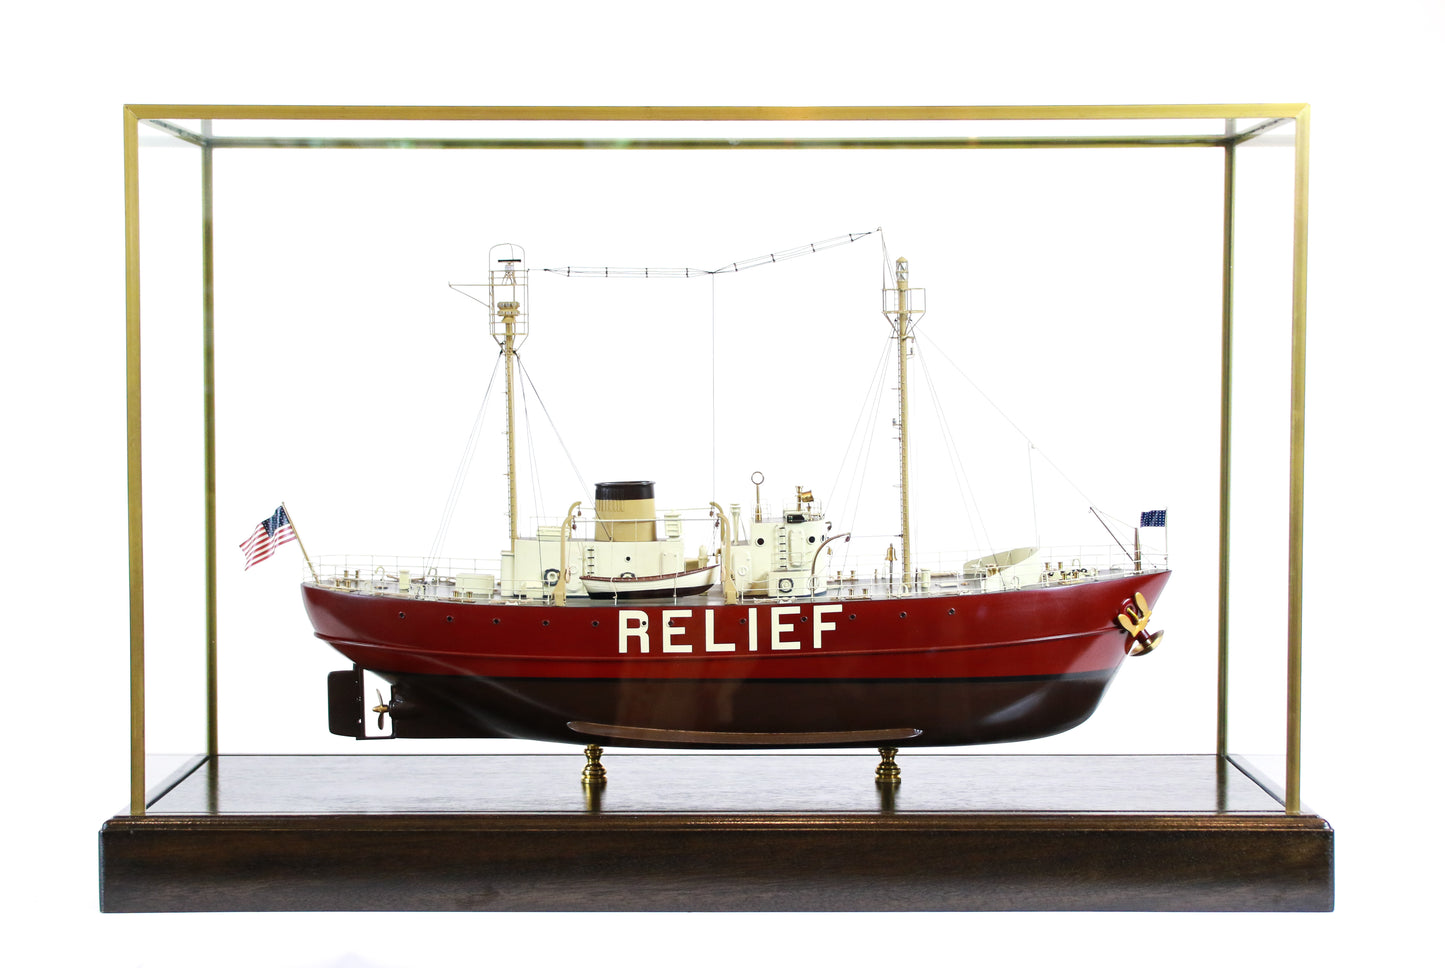 Lightship "Relief" of Oakland, California - Lannan Gallery